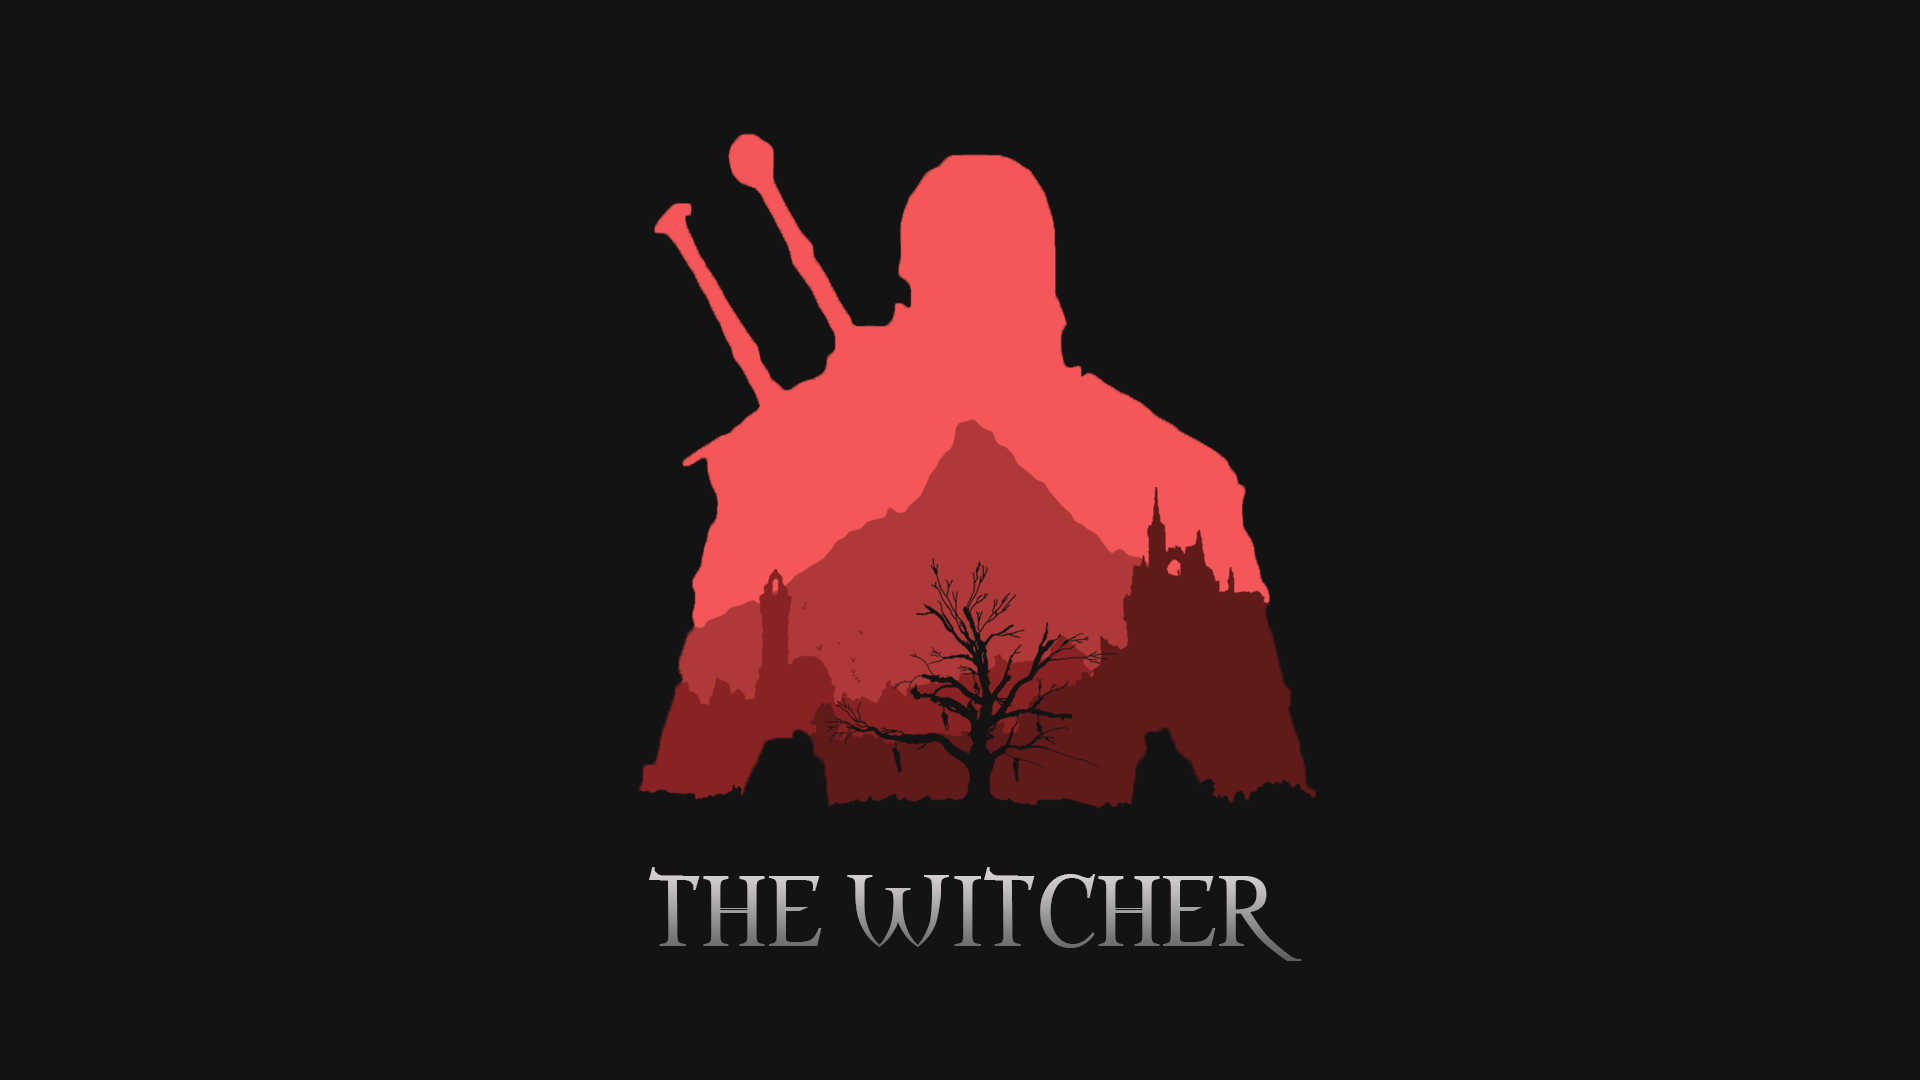 Minimalist Witcher Wallpaper (1080p)